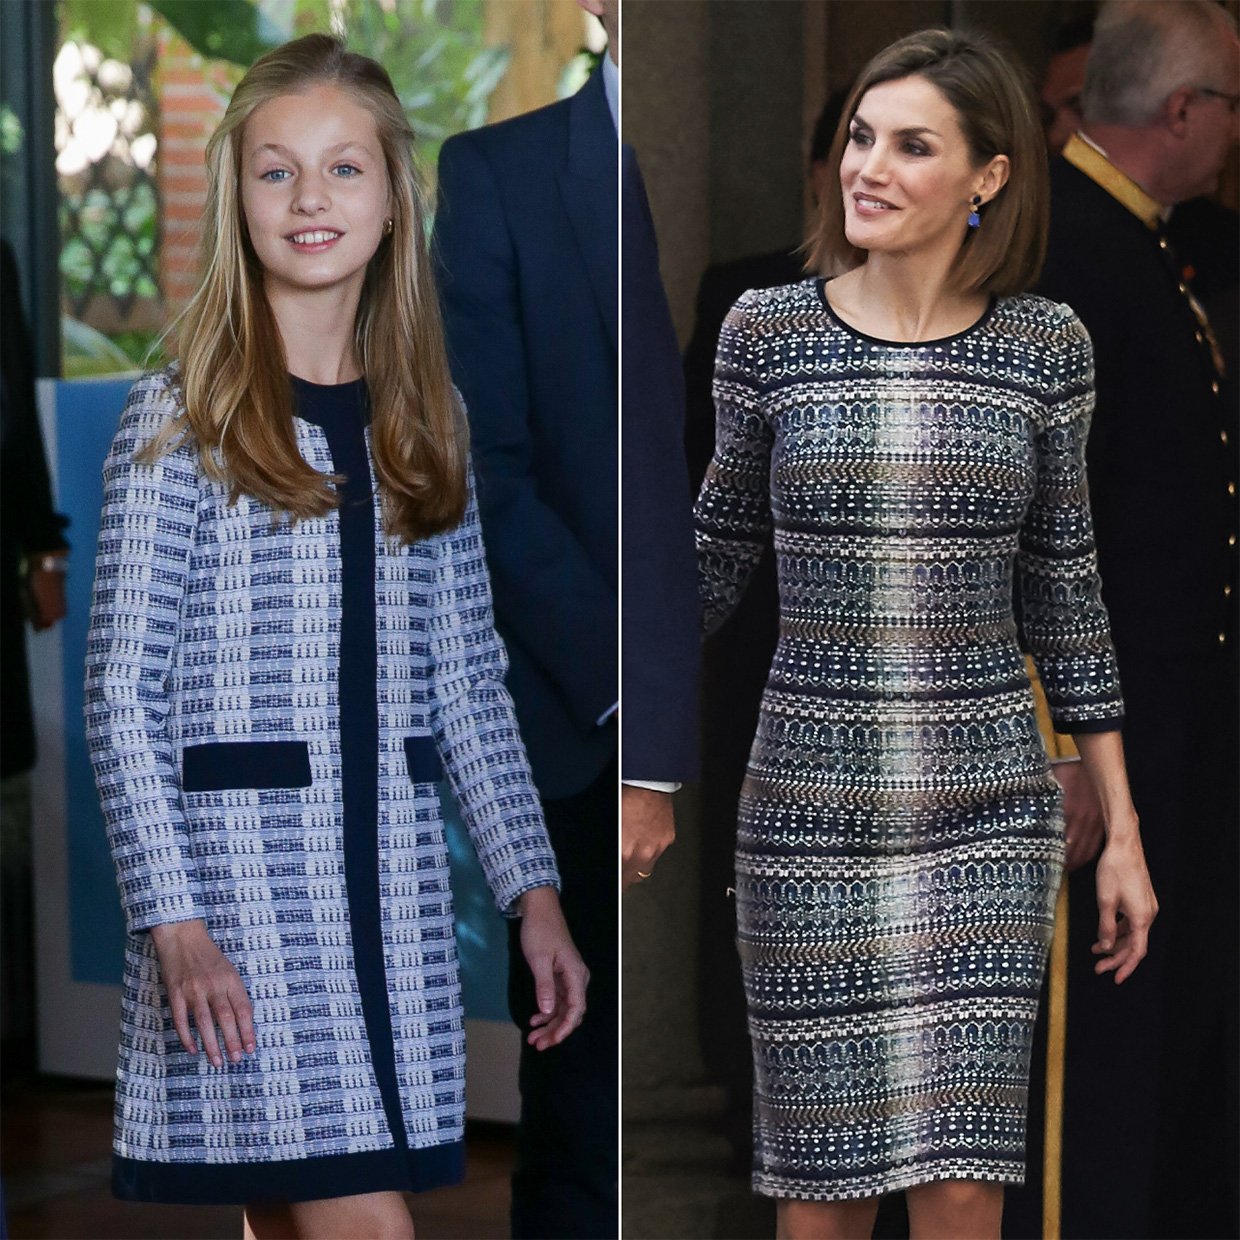 La Princesa sólo ha lucido una vez este vestido que recuerda tanto a uno de los preferidos de Letizia.